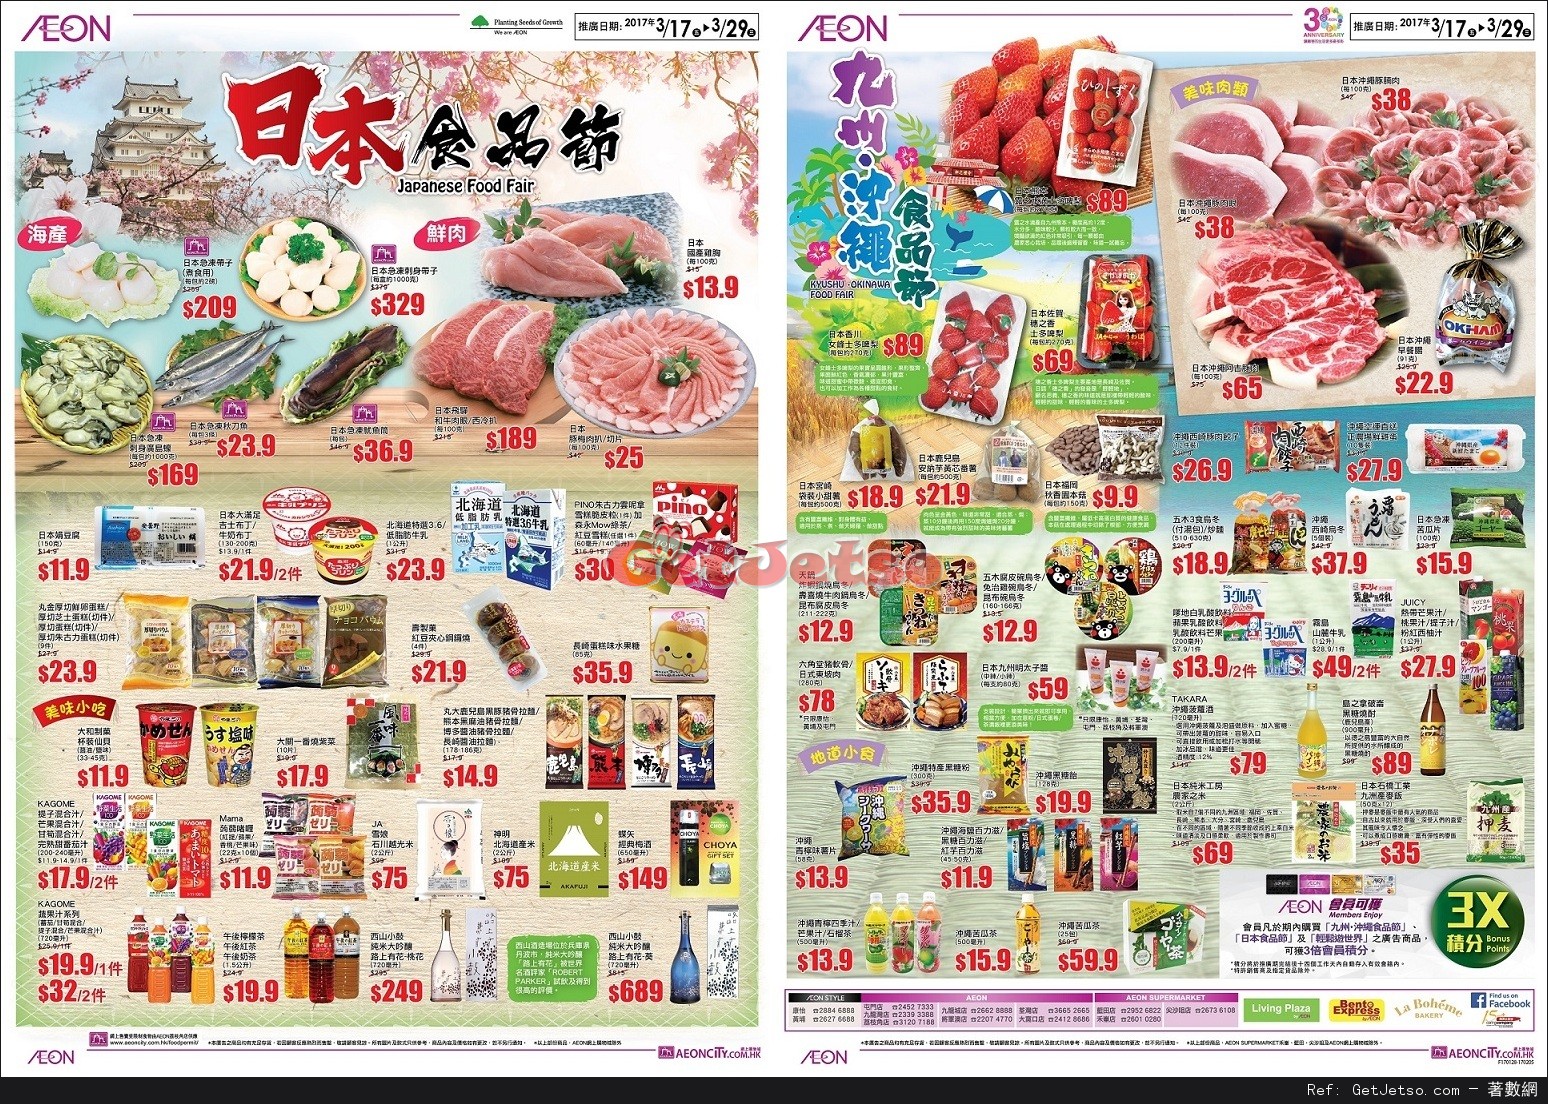 AEON 小童BB夏日展/日本食品節/輕鬆遊世界購物優惠(至17年3月29日)圖片3